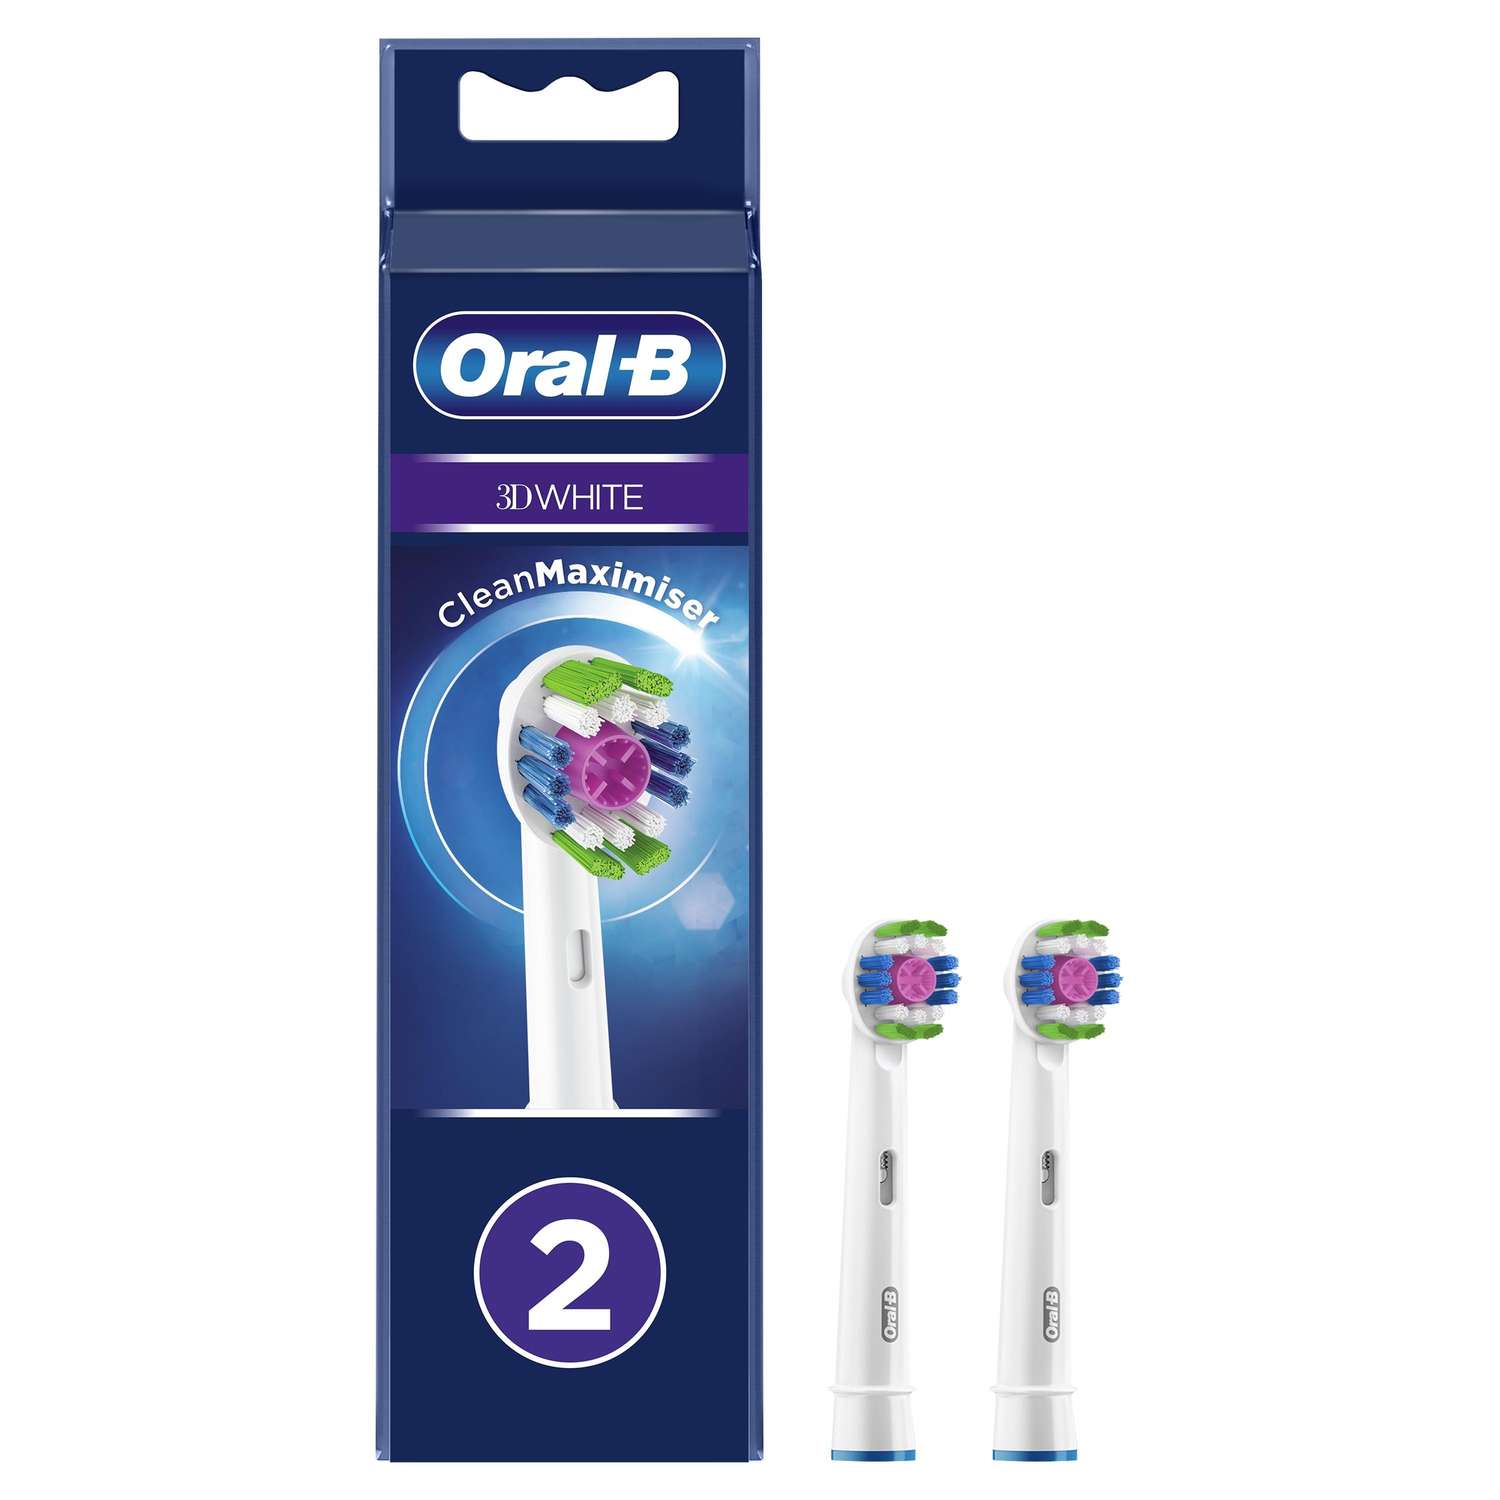 Насадки для электрических зубных щеток Oral-B 3D White CleanMaximiser 2шт 80347231 - фото 1